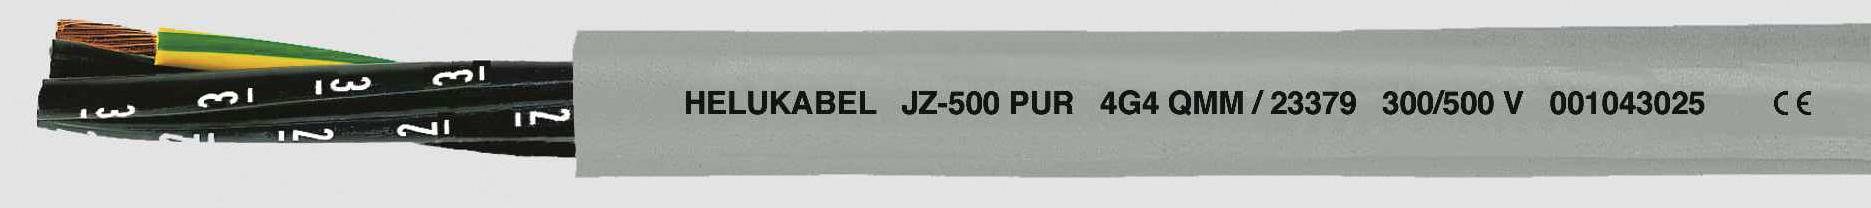 HELUKABEL JZ-500 PUR Steuerleitung 7 G 0.50 mm² Grau 23321-1000 1000 m